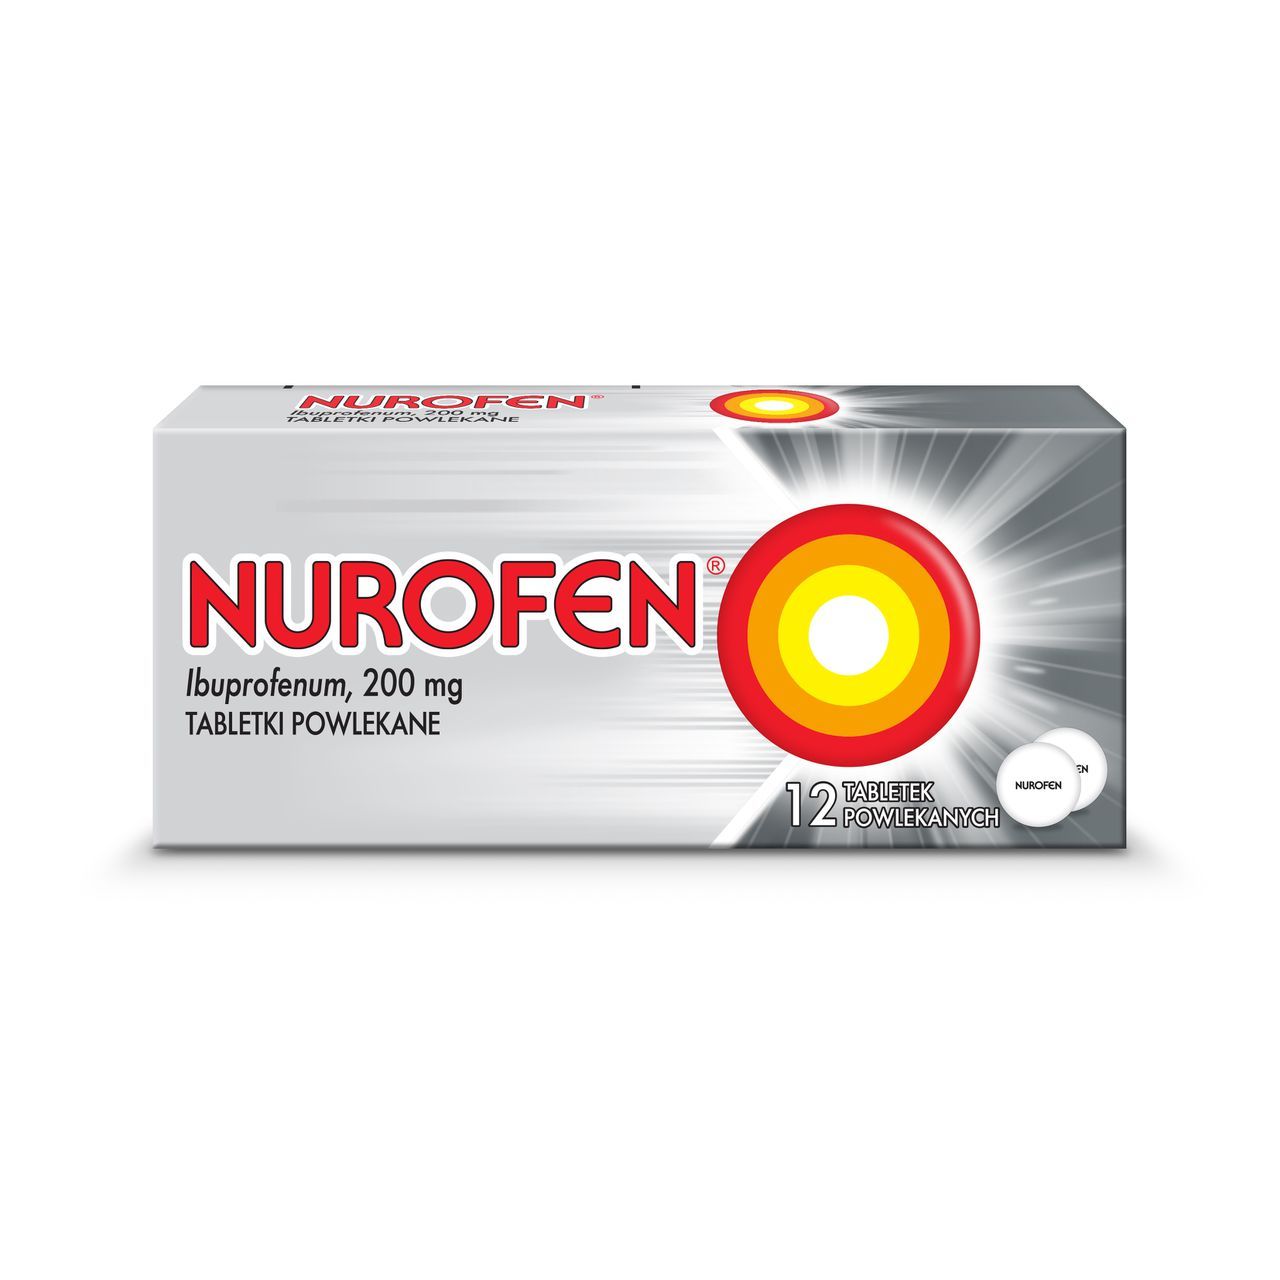 Нурофен от головы помогает